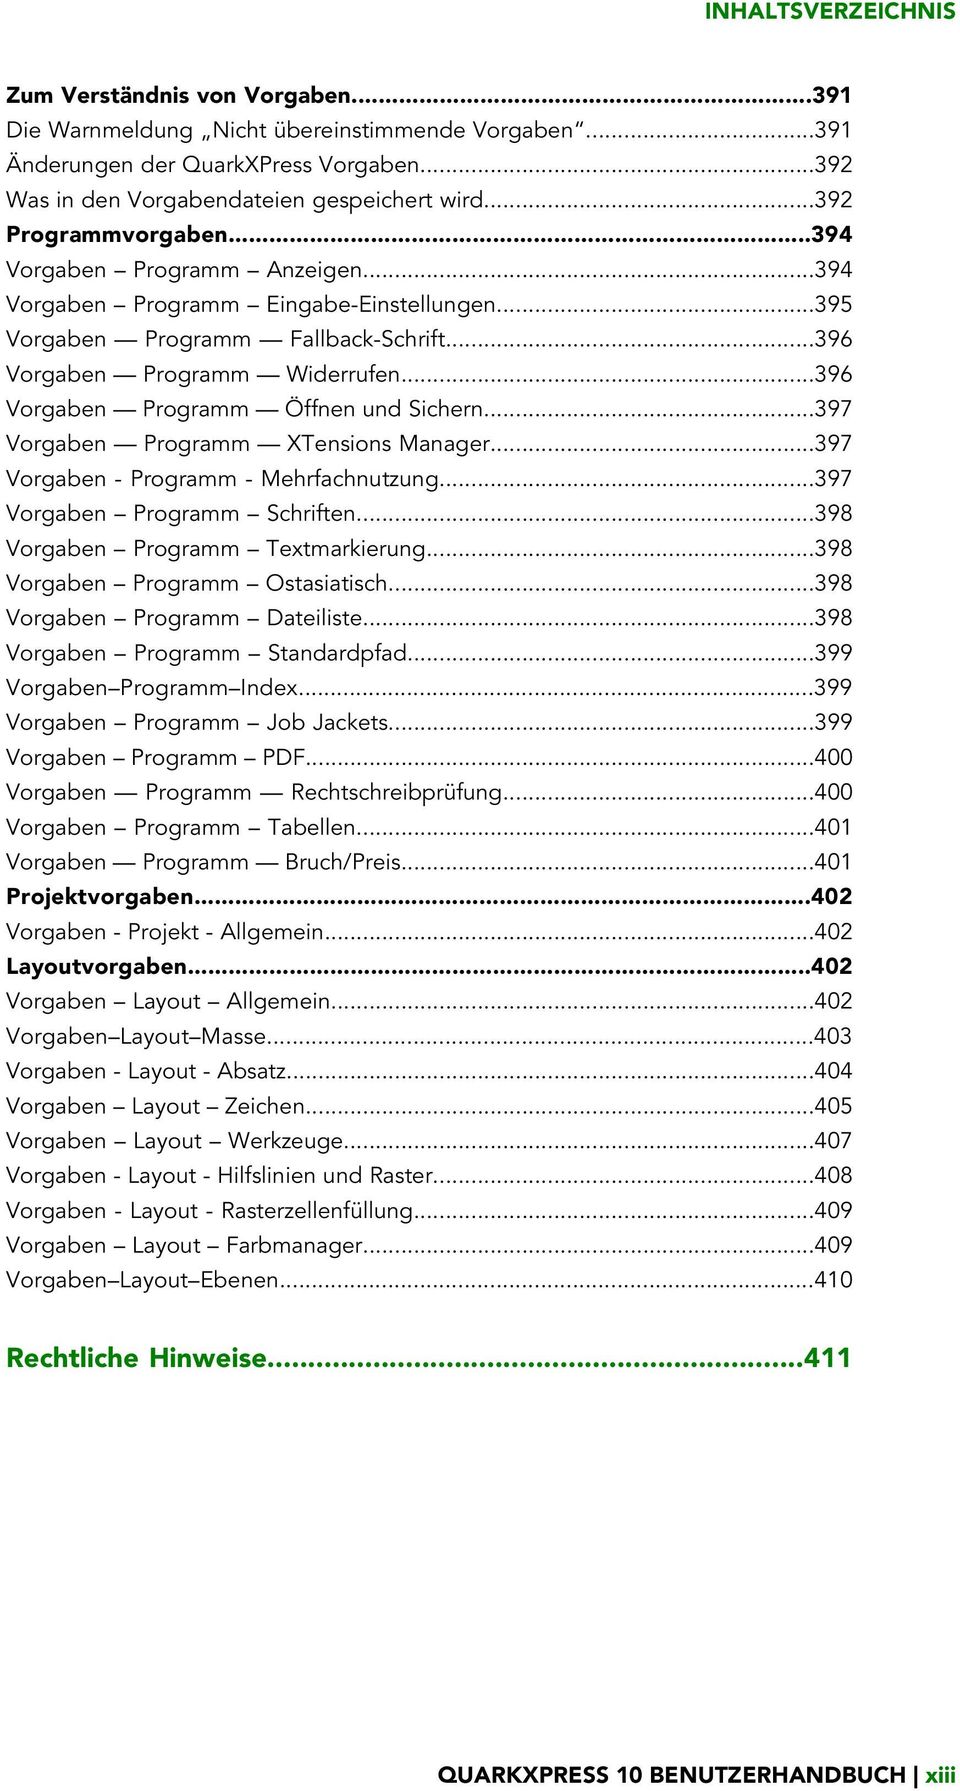 ..396 Vorgaben Programm Öffnen und Sichern...397 Vorgaben Programm XTensions Manager...397 Vorgaben - Programm - Mehrfachnutzung...397 Vorgaben Programm Schriften...398 Vorgaben Programm Textmarkierung.